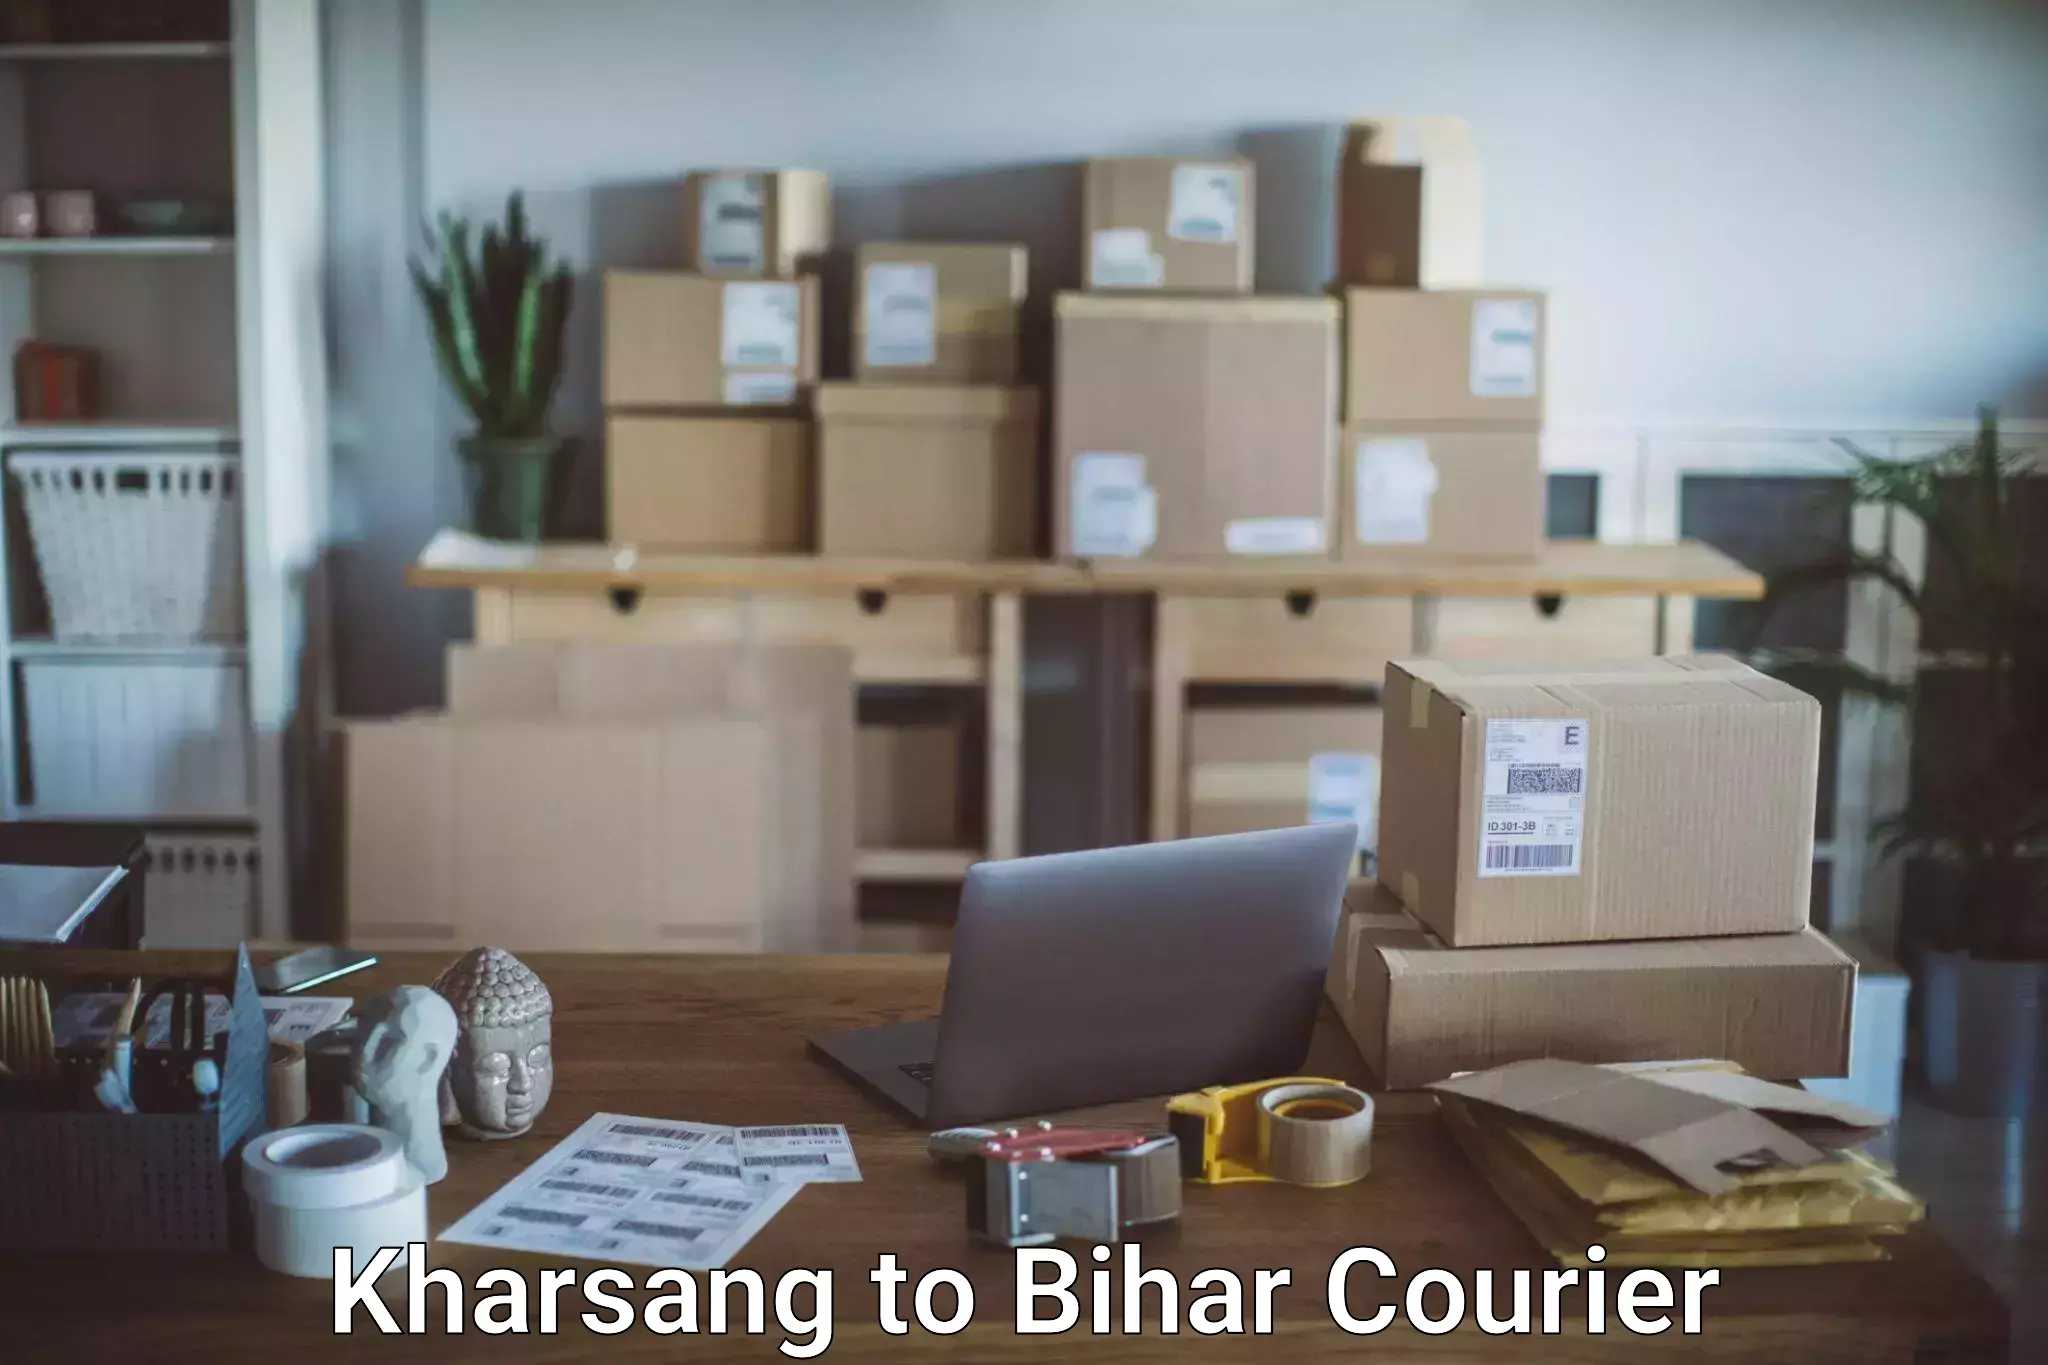 Luggage transport deals Kharsang to Bikramganj